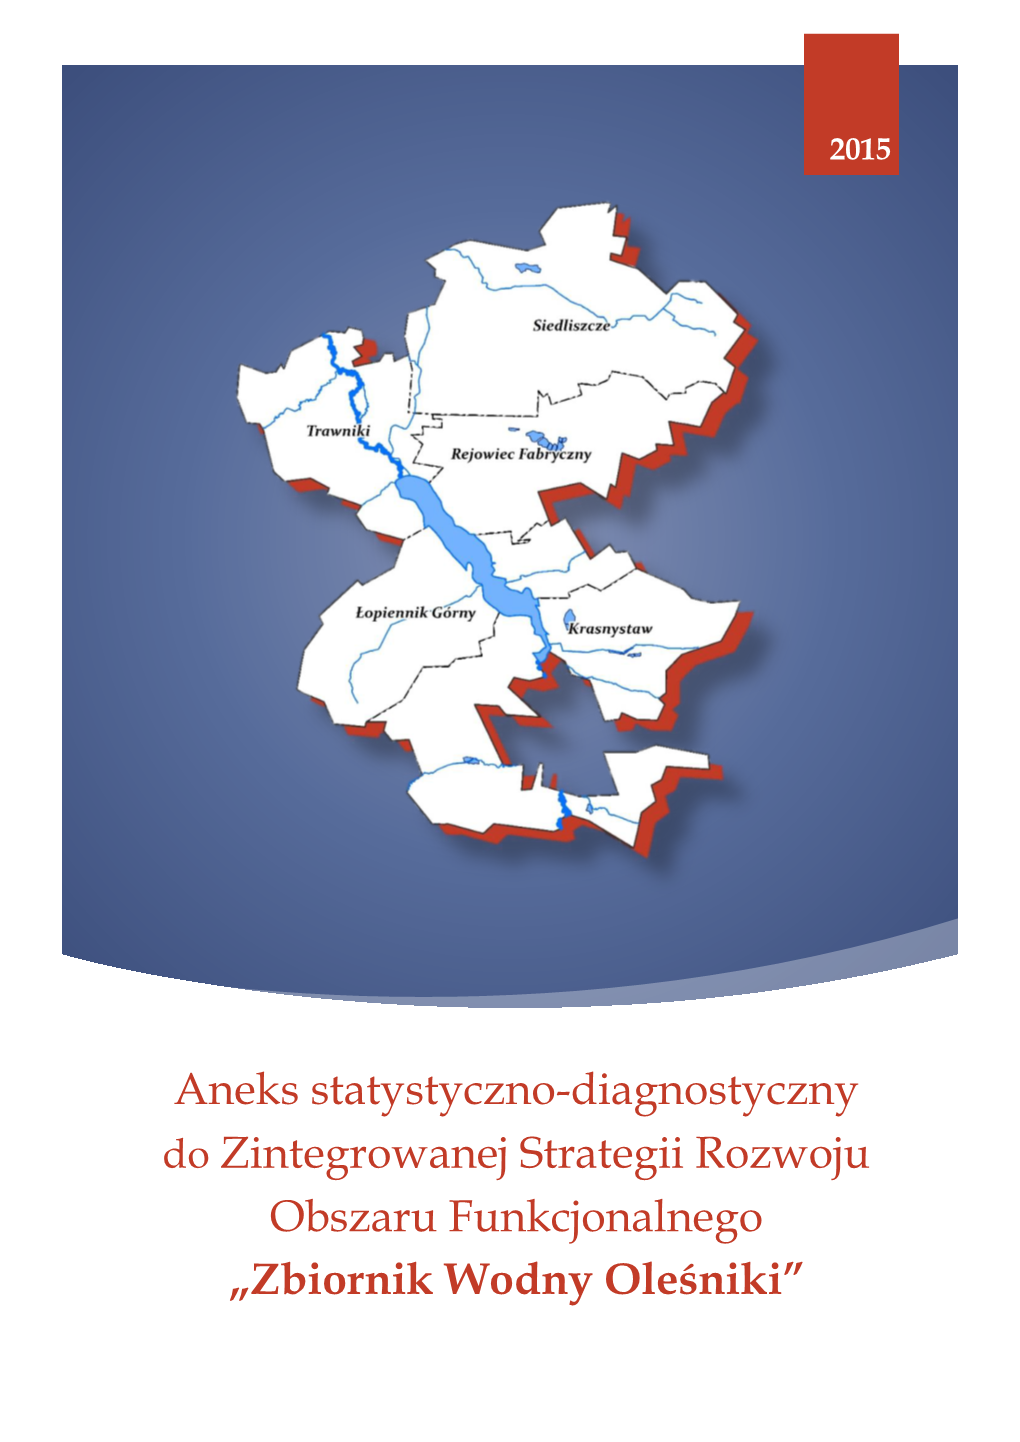 Zbiornik Wodny Oleśniki” Zintegrowana Strategia Rozwoju of „Zbiornik Wodny Oleśniki” 2